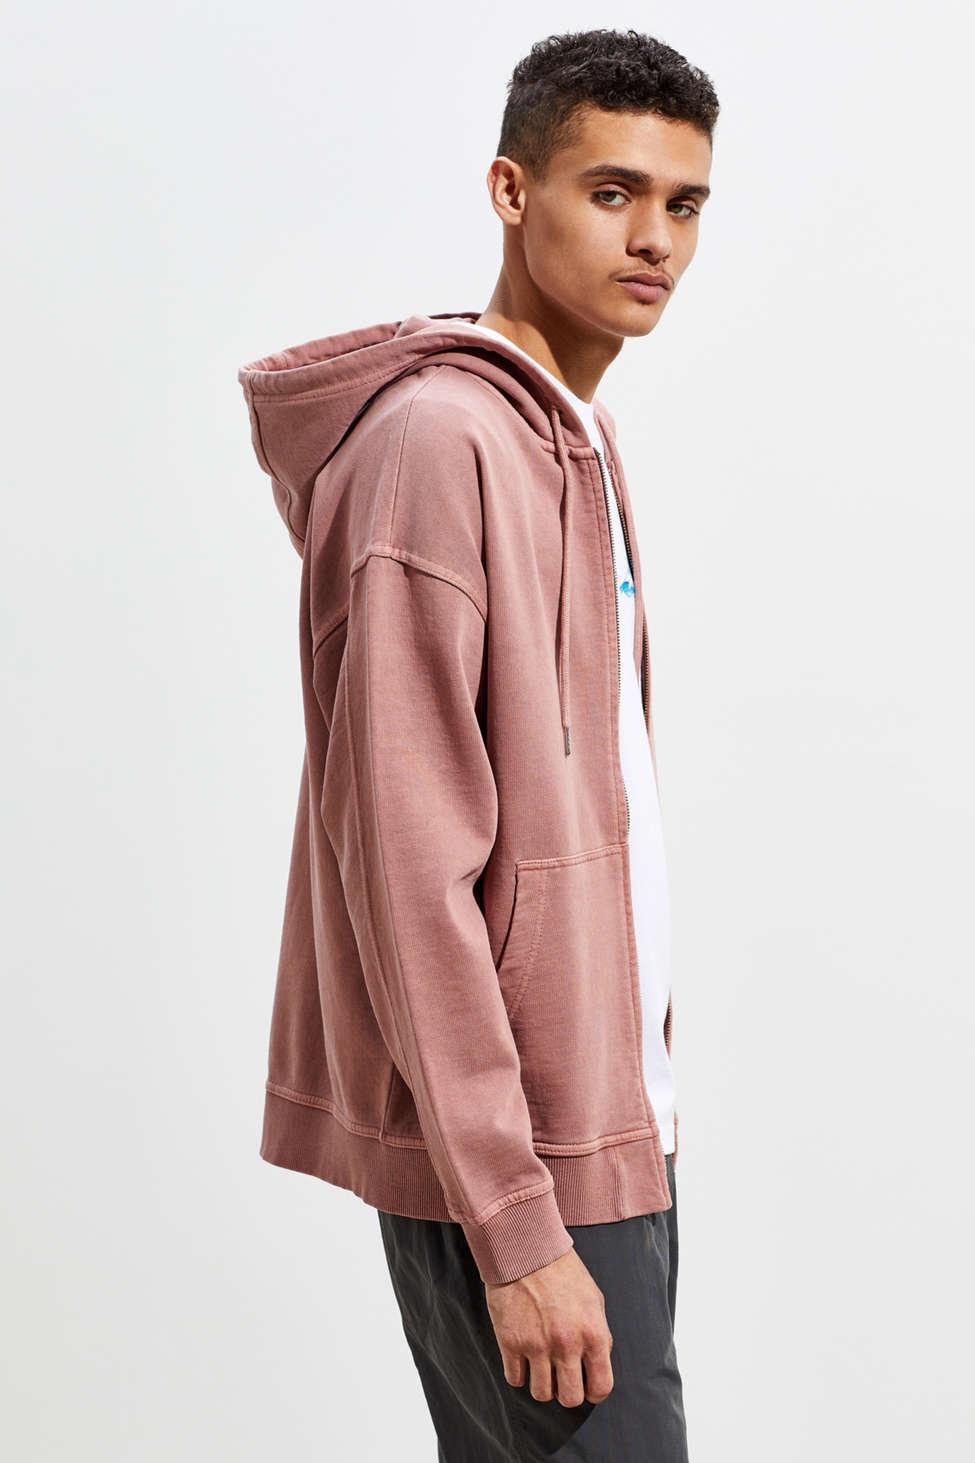 Urban Outfitters Uo Full-zip Hoodie Sweatshirt for Men | Lyst